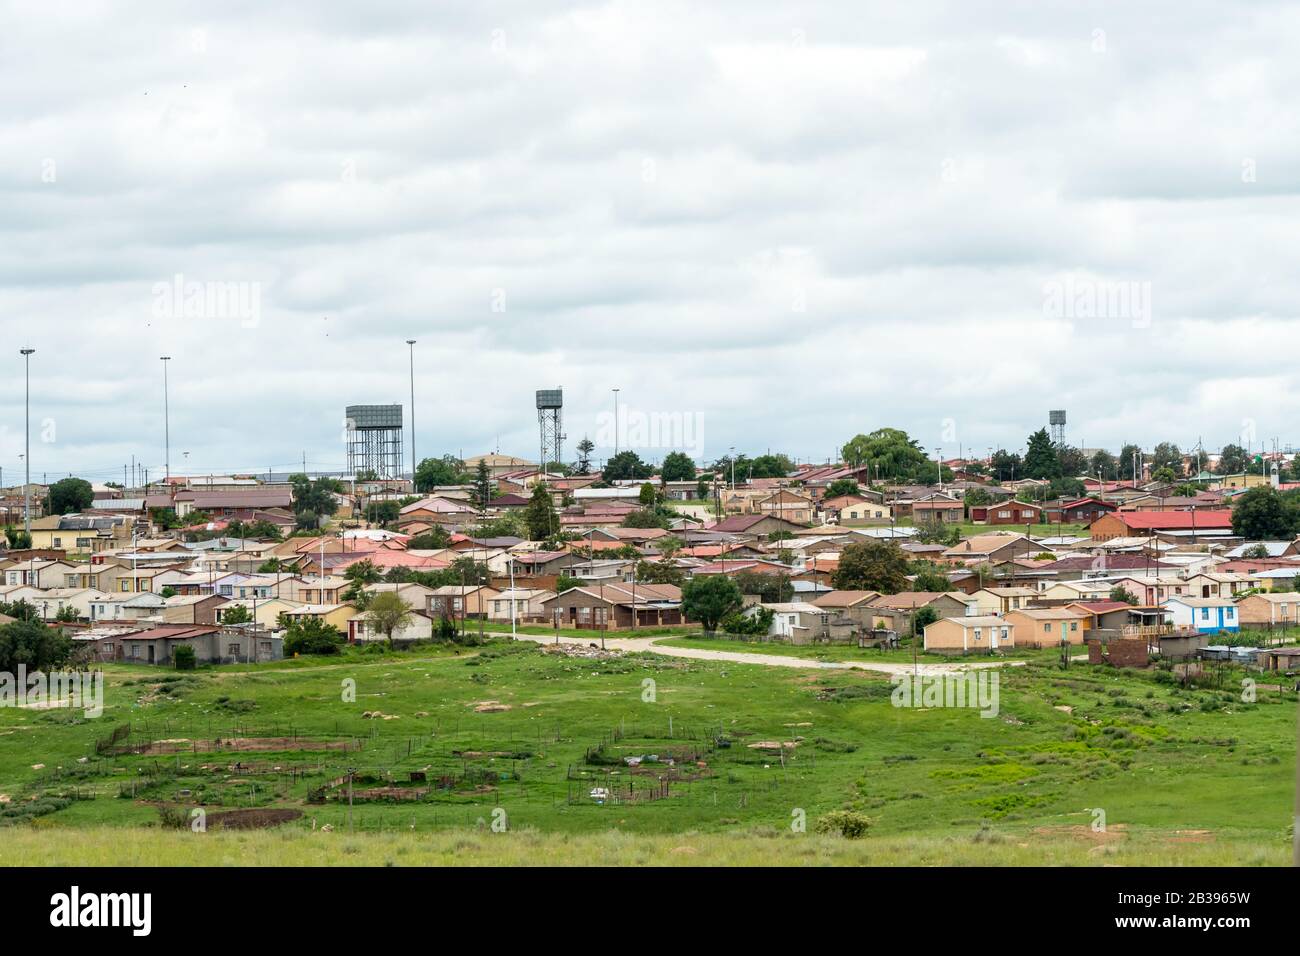 Petite ville et communauté sud-africaines dans la province de l'État libre, Afrique du Sud montrant des logements à faible coût Banque D'Images